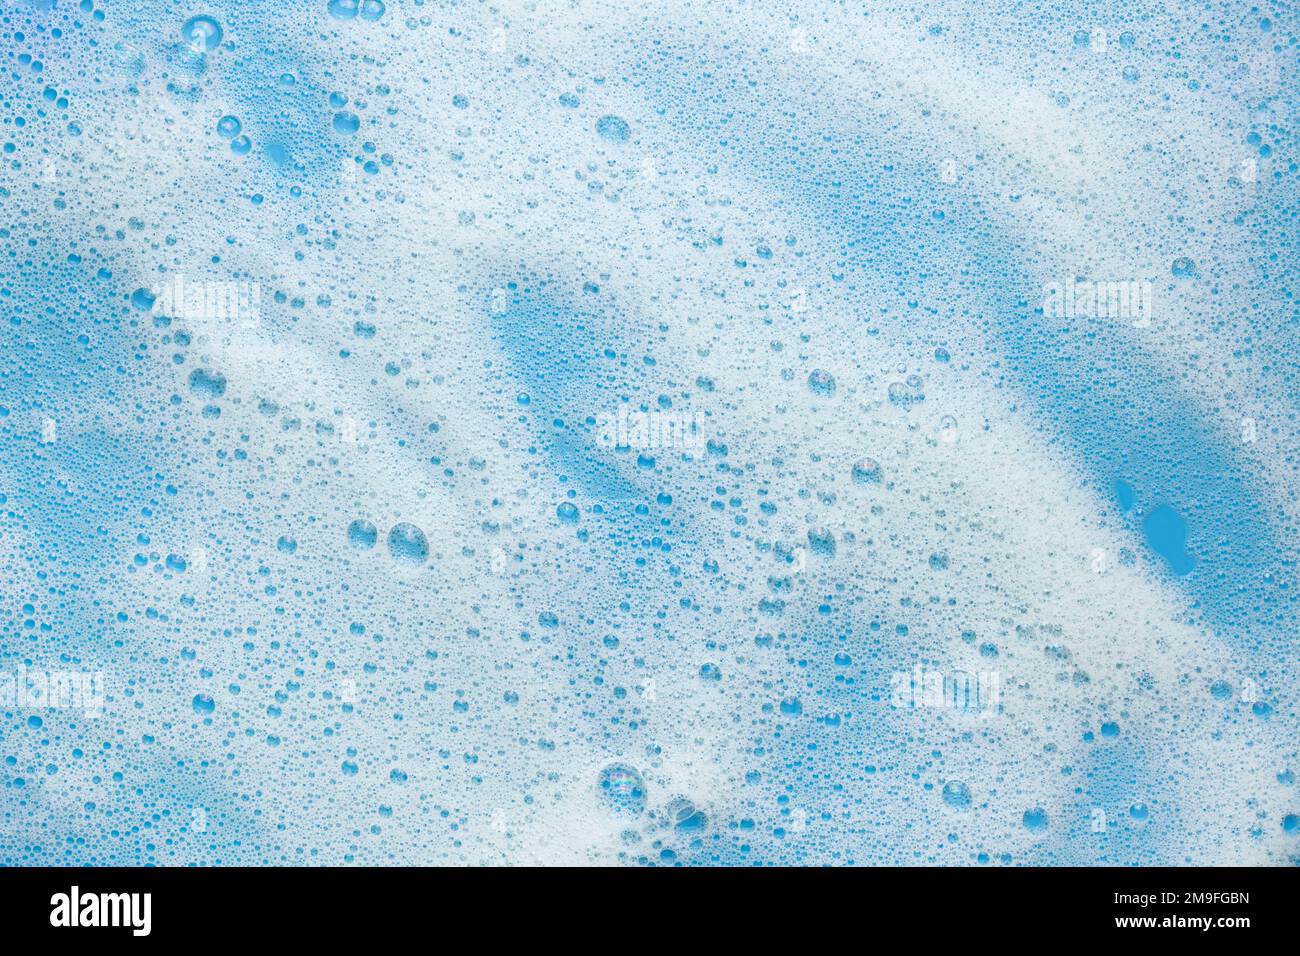 Weißer Schaumschaum auf blauem Hintergrund. Konzept für Schaumprodukte, Kosmetika oder Reinigungsmittel. Stockfoto